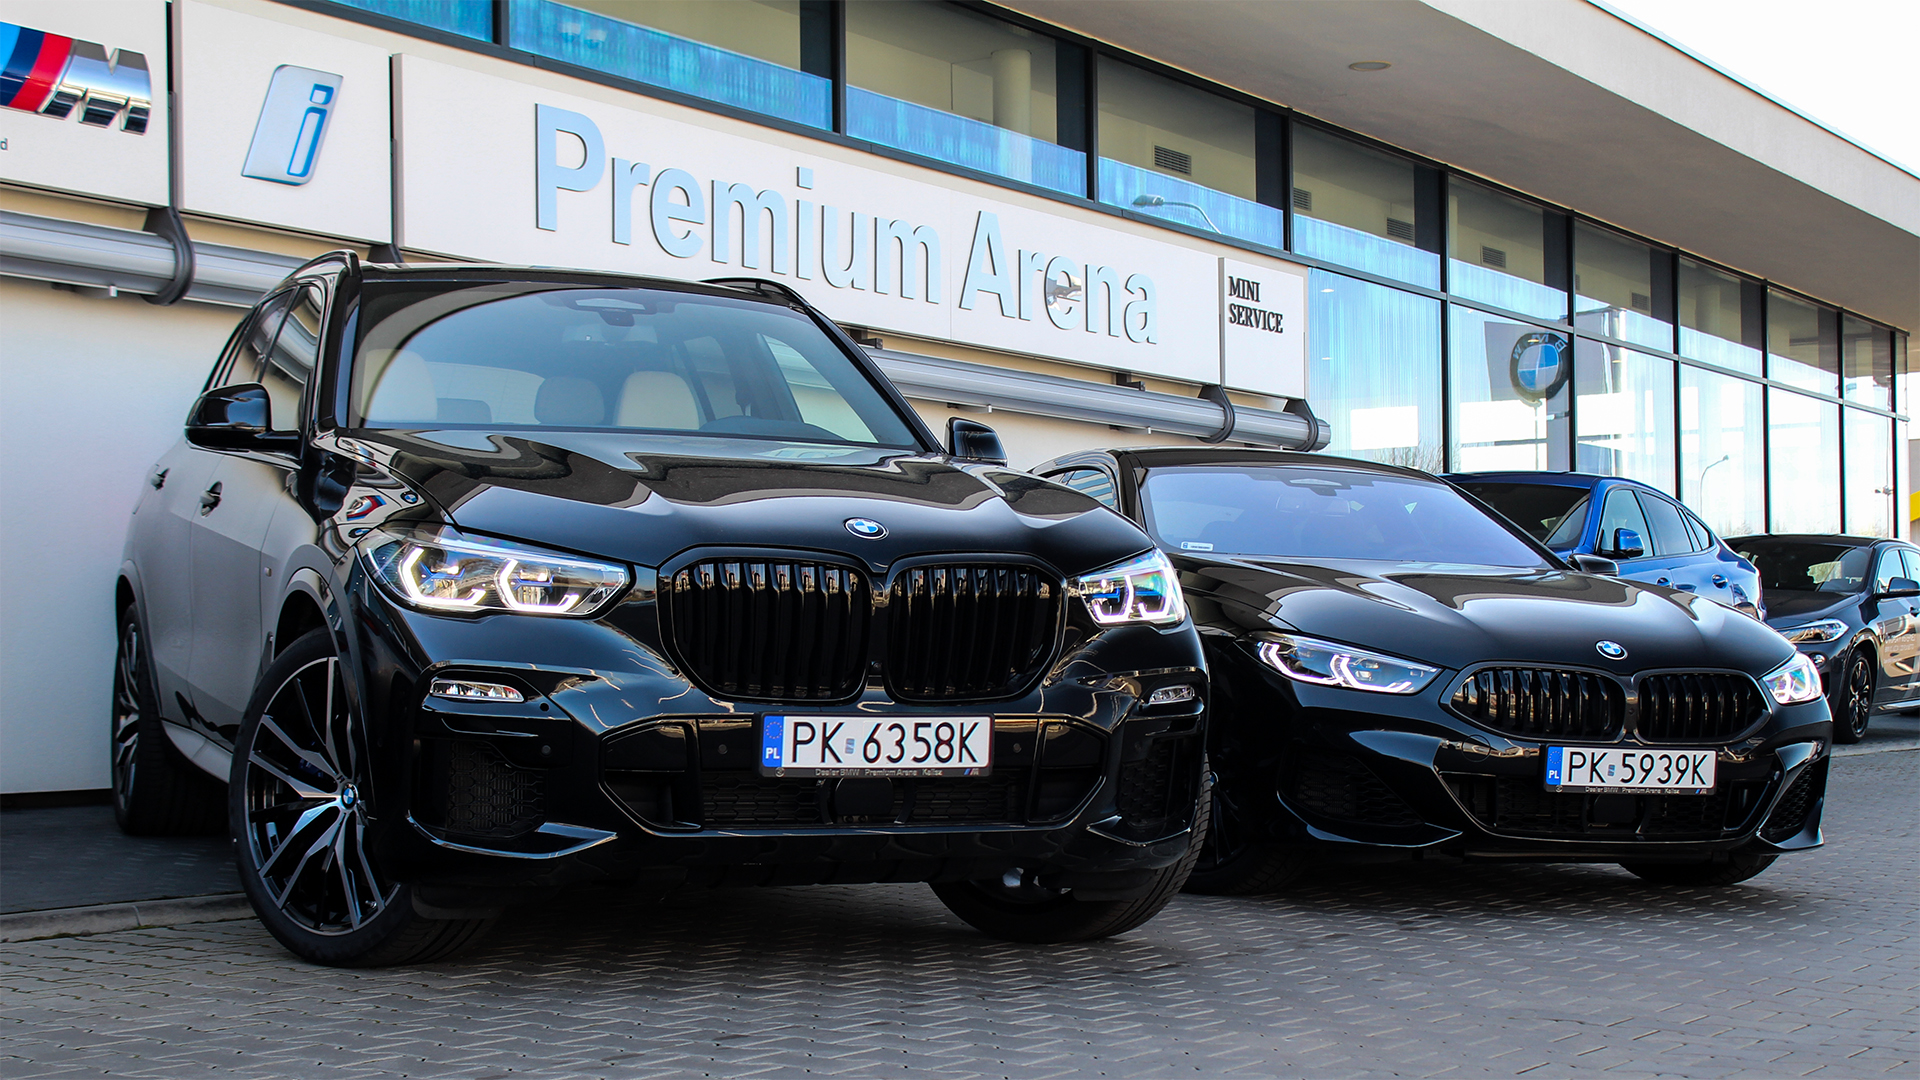 Zdjęcie profilowe dealera BMW - Premium Arena Kalisz